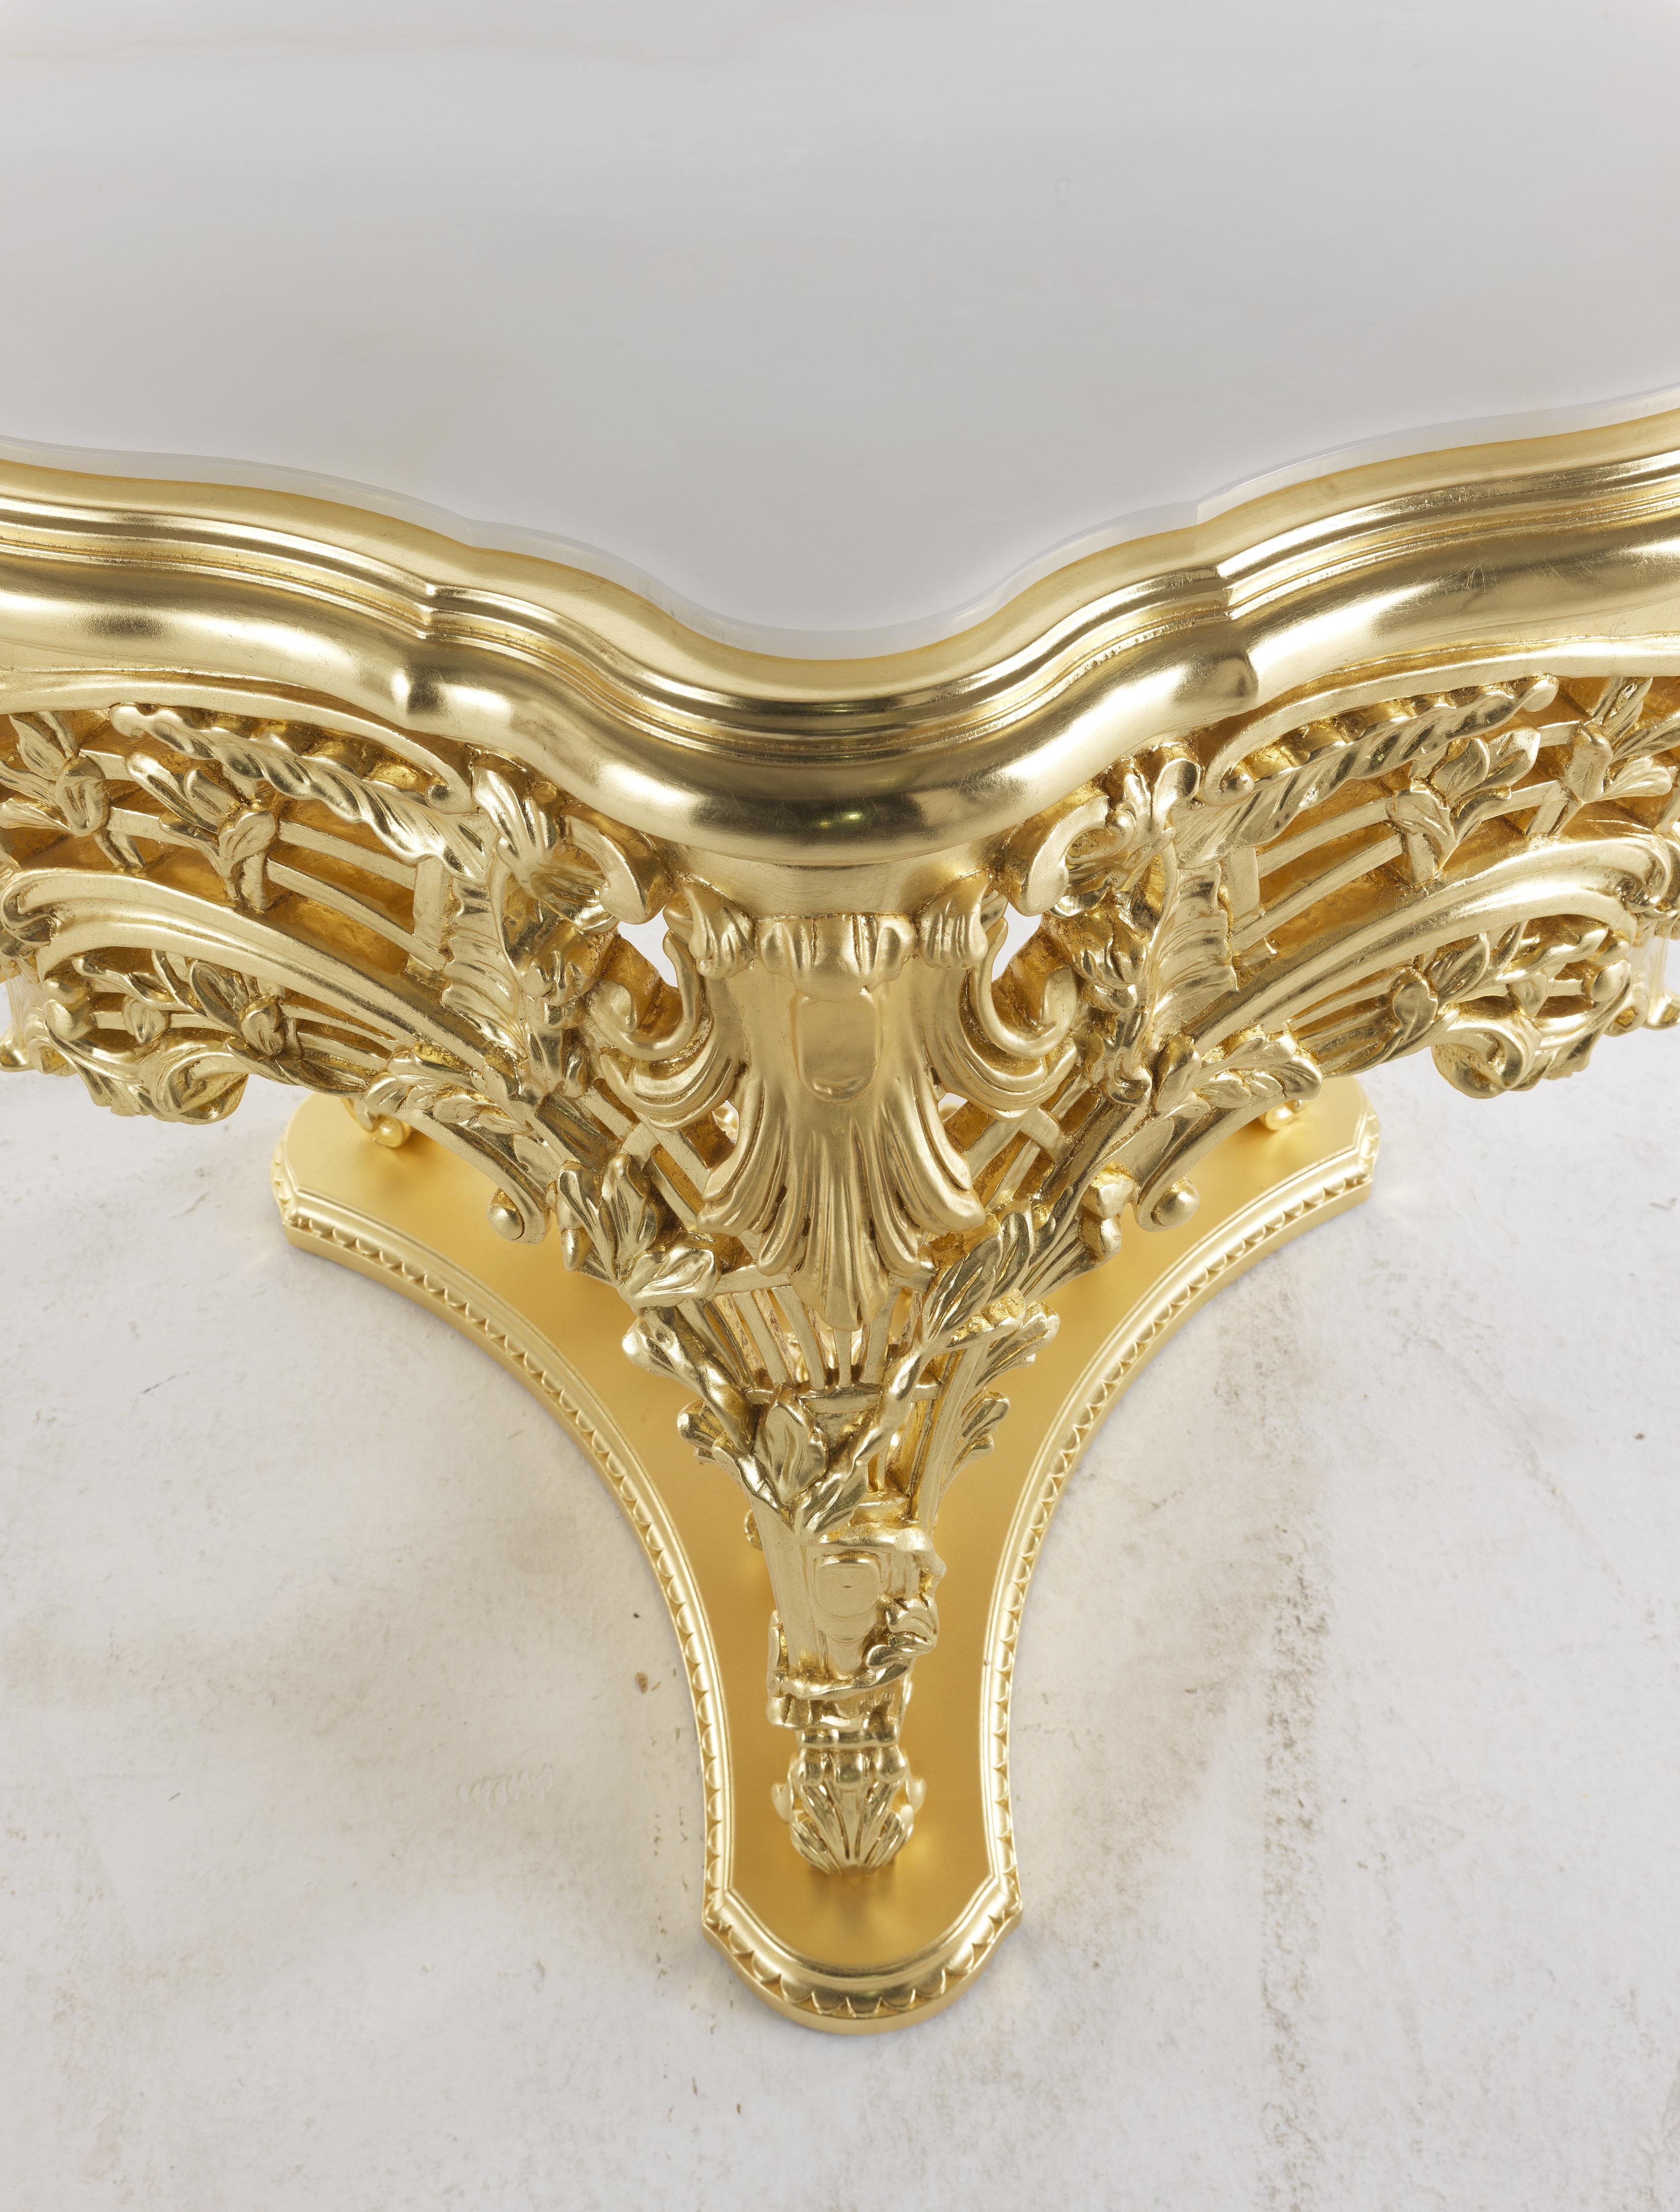 Helios est une table d'appoint raffinée en bois de hêtre sculpté à la main avec une finition dorée brillante et mate. Un meuble exclusif et luxueux, qui représente un exemple d'ébénisterie baroque d'un grand raffinement. Les sculptures de la base